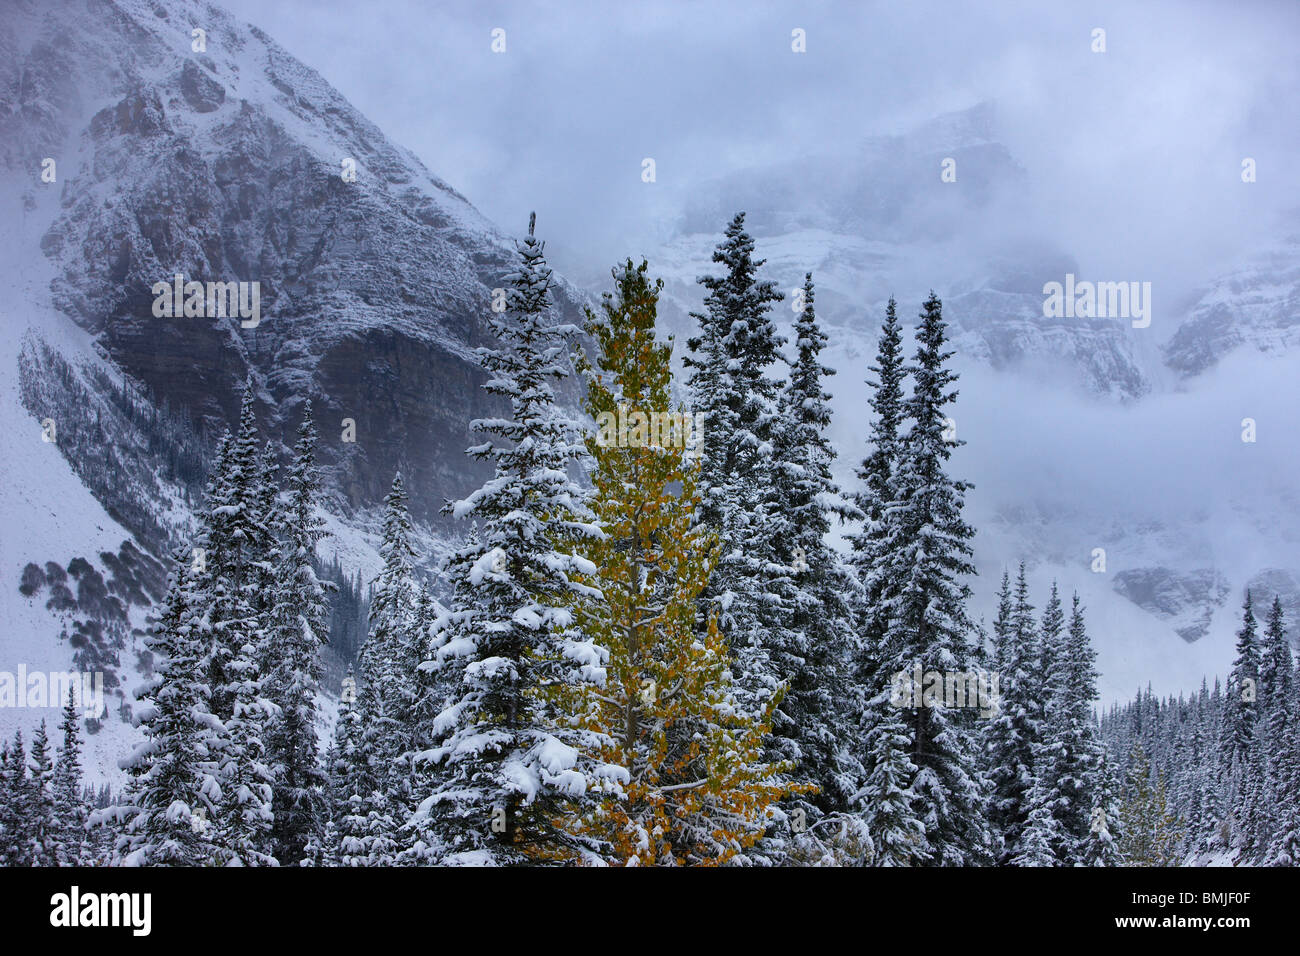 Los colores de otoño y una nieve fresca en el Valle de los Diez Picos, Parque Nacional de Banff, Alberta, Canadá Foto de stock